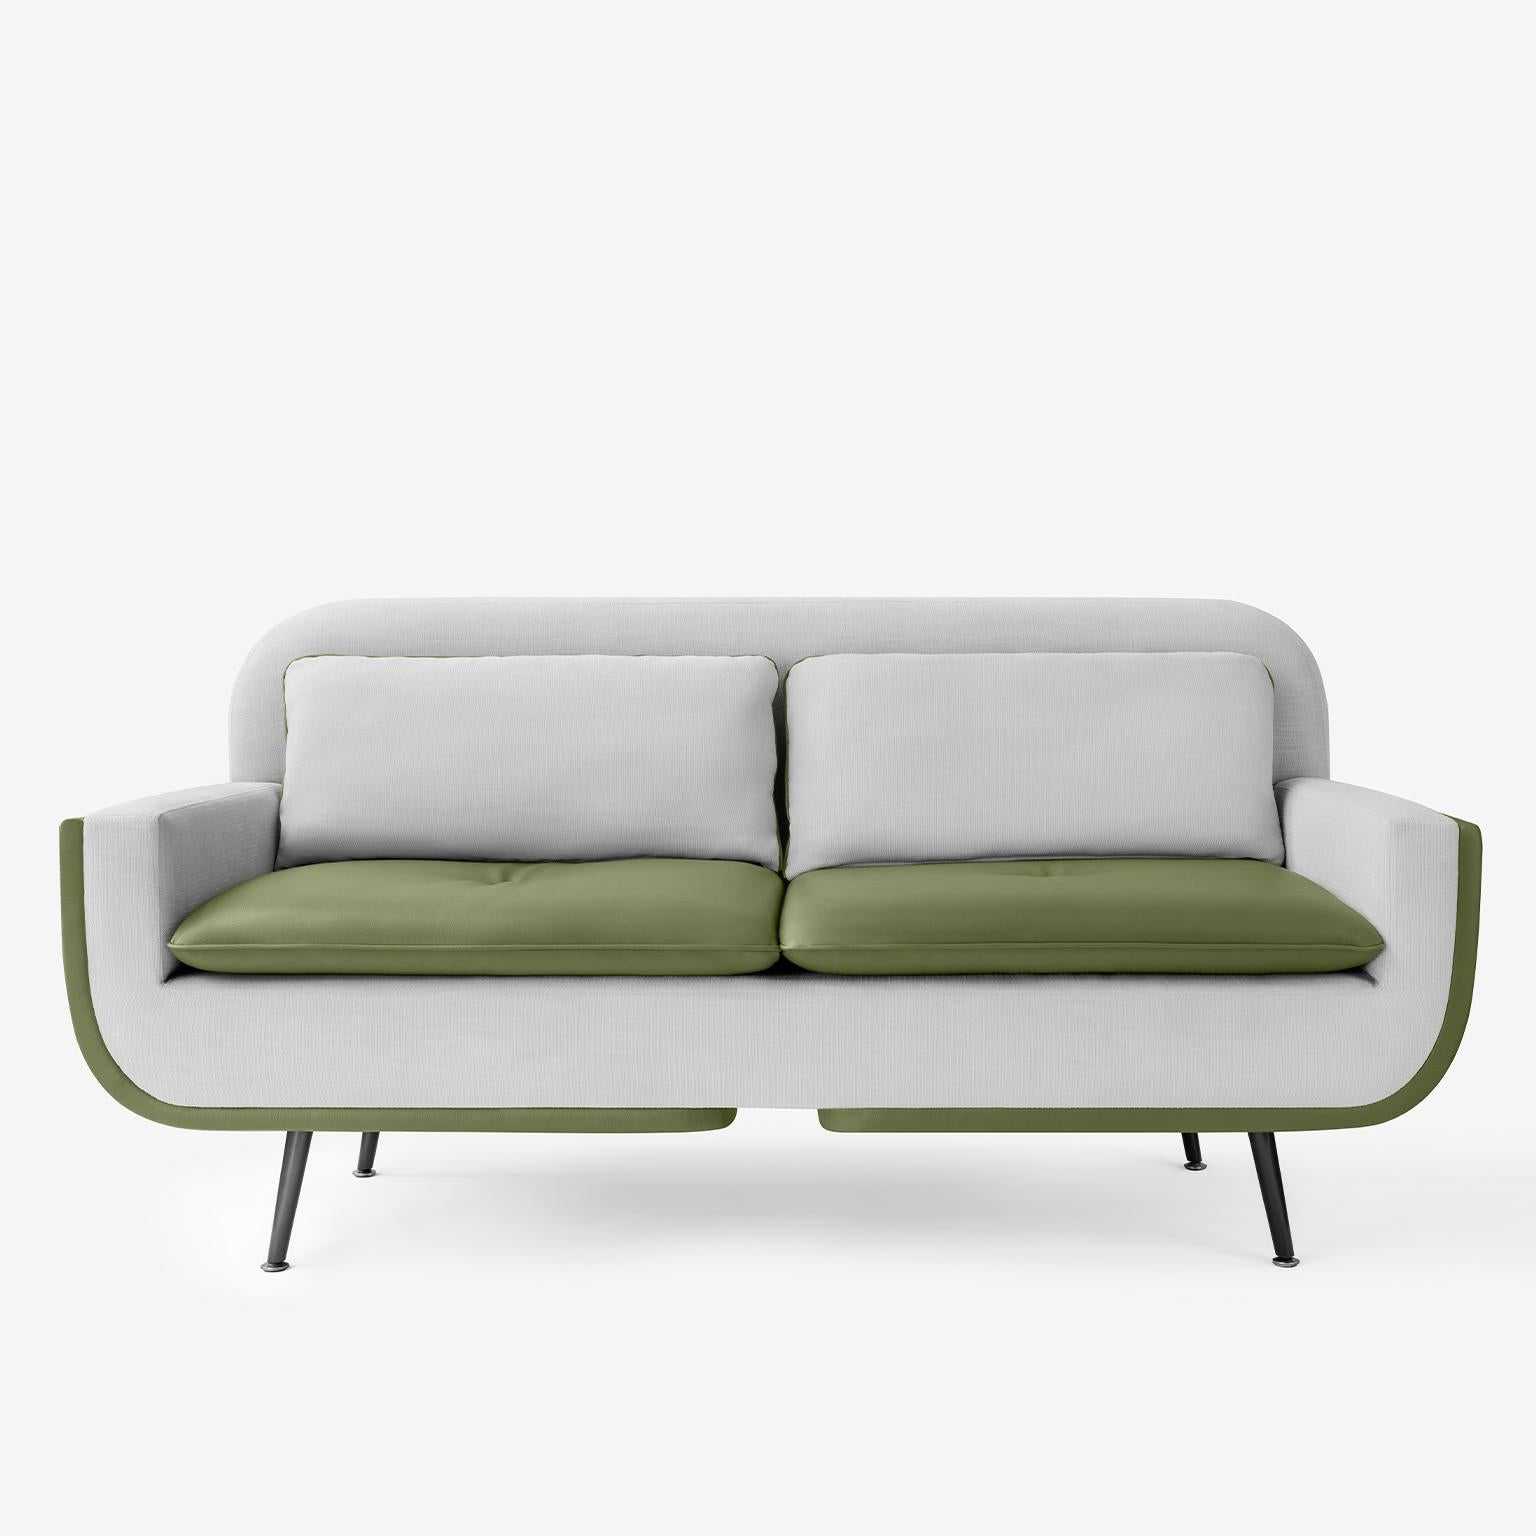 Conçu pour optimiser à la fois la forme et le confort, le canapé deux places Up ajoutera un style unique à votre espace.

Vous pouvez combiner différents tissus pour le dos et le devant du canapé ou choisir un seul tissu. 

-Rembourrage à ressort